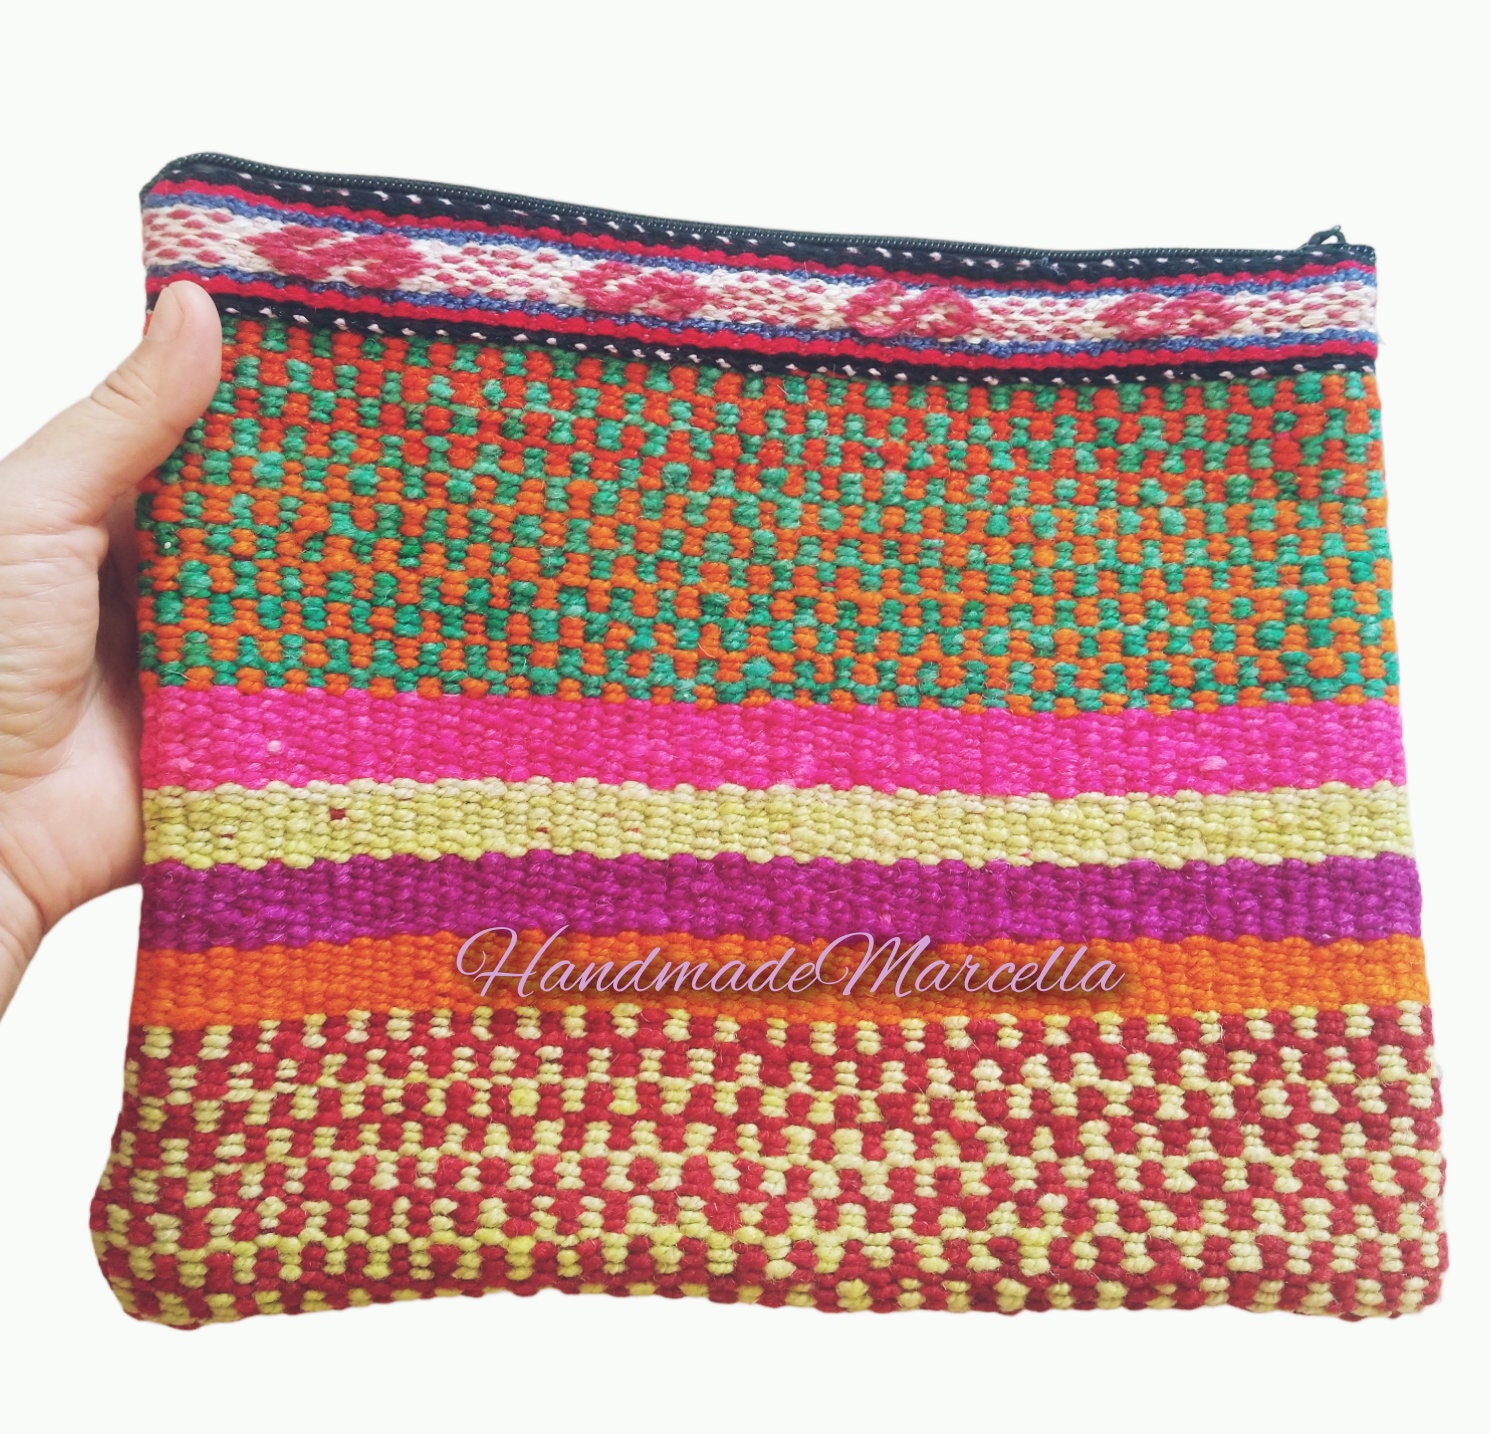 Handmade Bag in Peru With Andean Sheep Wool Loom, Handmade Loom Clutch ...